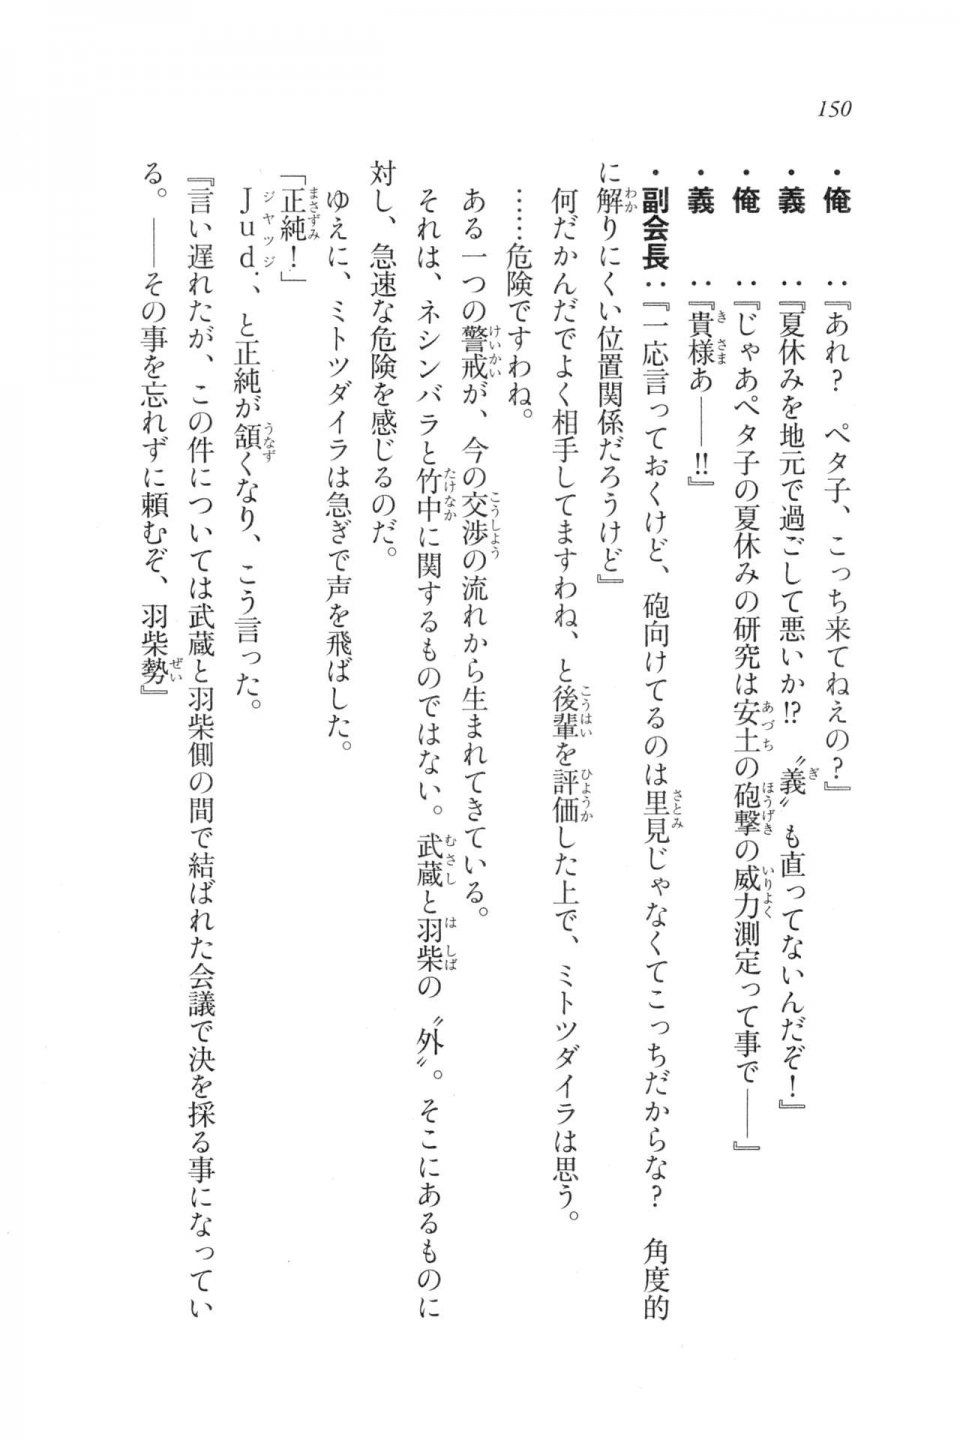 Kyoukai Senjou no Horizon LN Vol 20(8B) - Photo #150